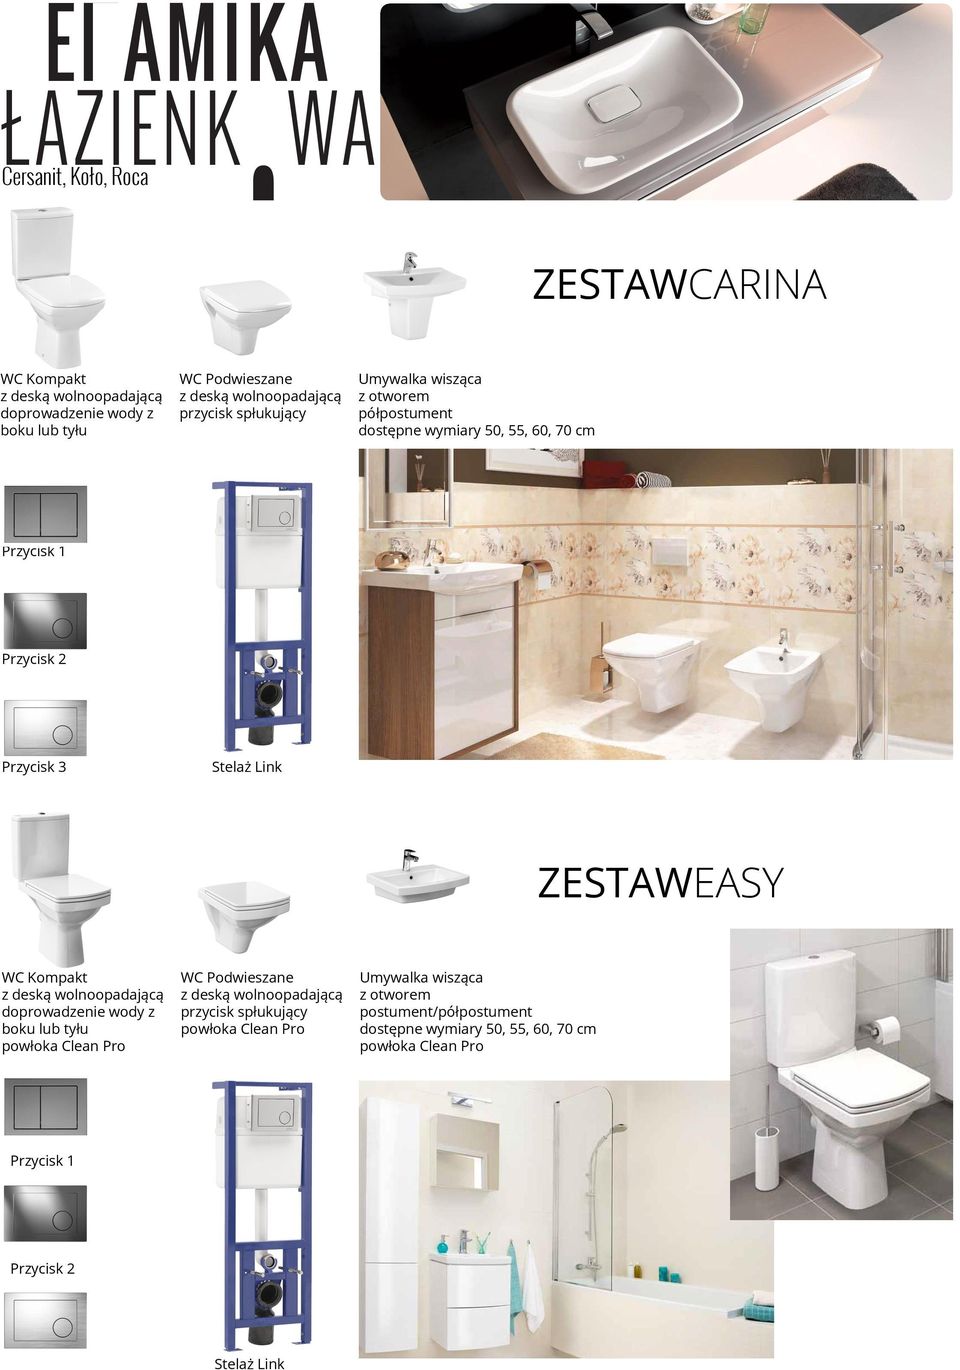 Link ZESTAWEASY WC Kompakt z deską wolnoopadającą doprowadzenie wody z boku lub tyłu powłoka Clean Pro WC Podwieszane z deską wolnoopadającą przycisk